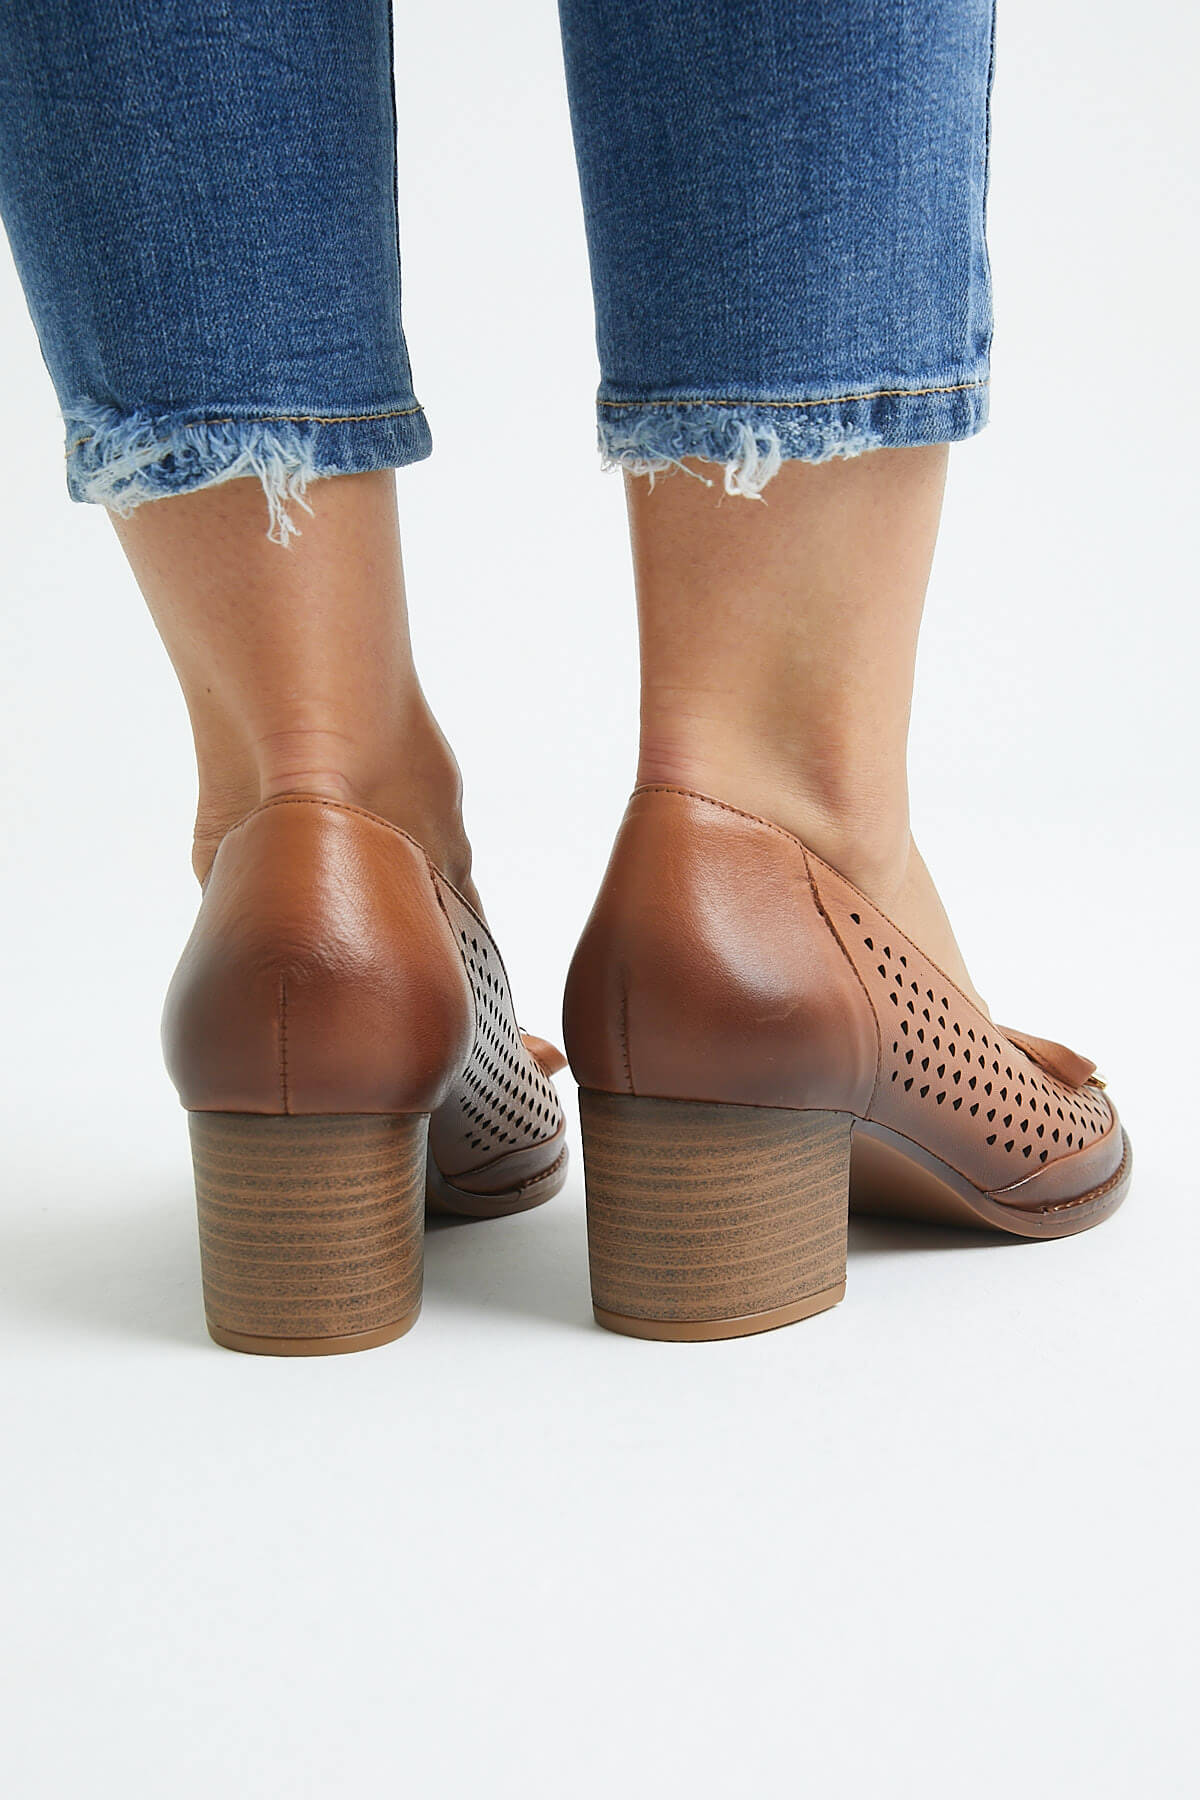 Kadın Topuklu Deri Ayakkabı Taba 2113301Y